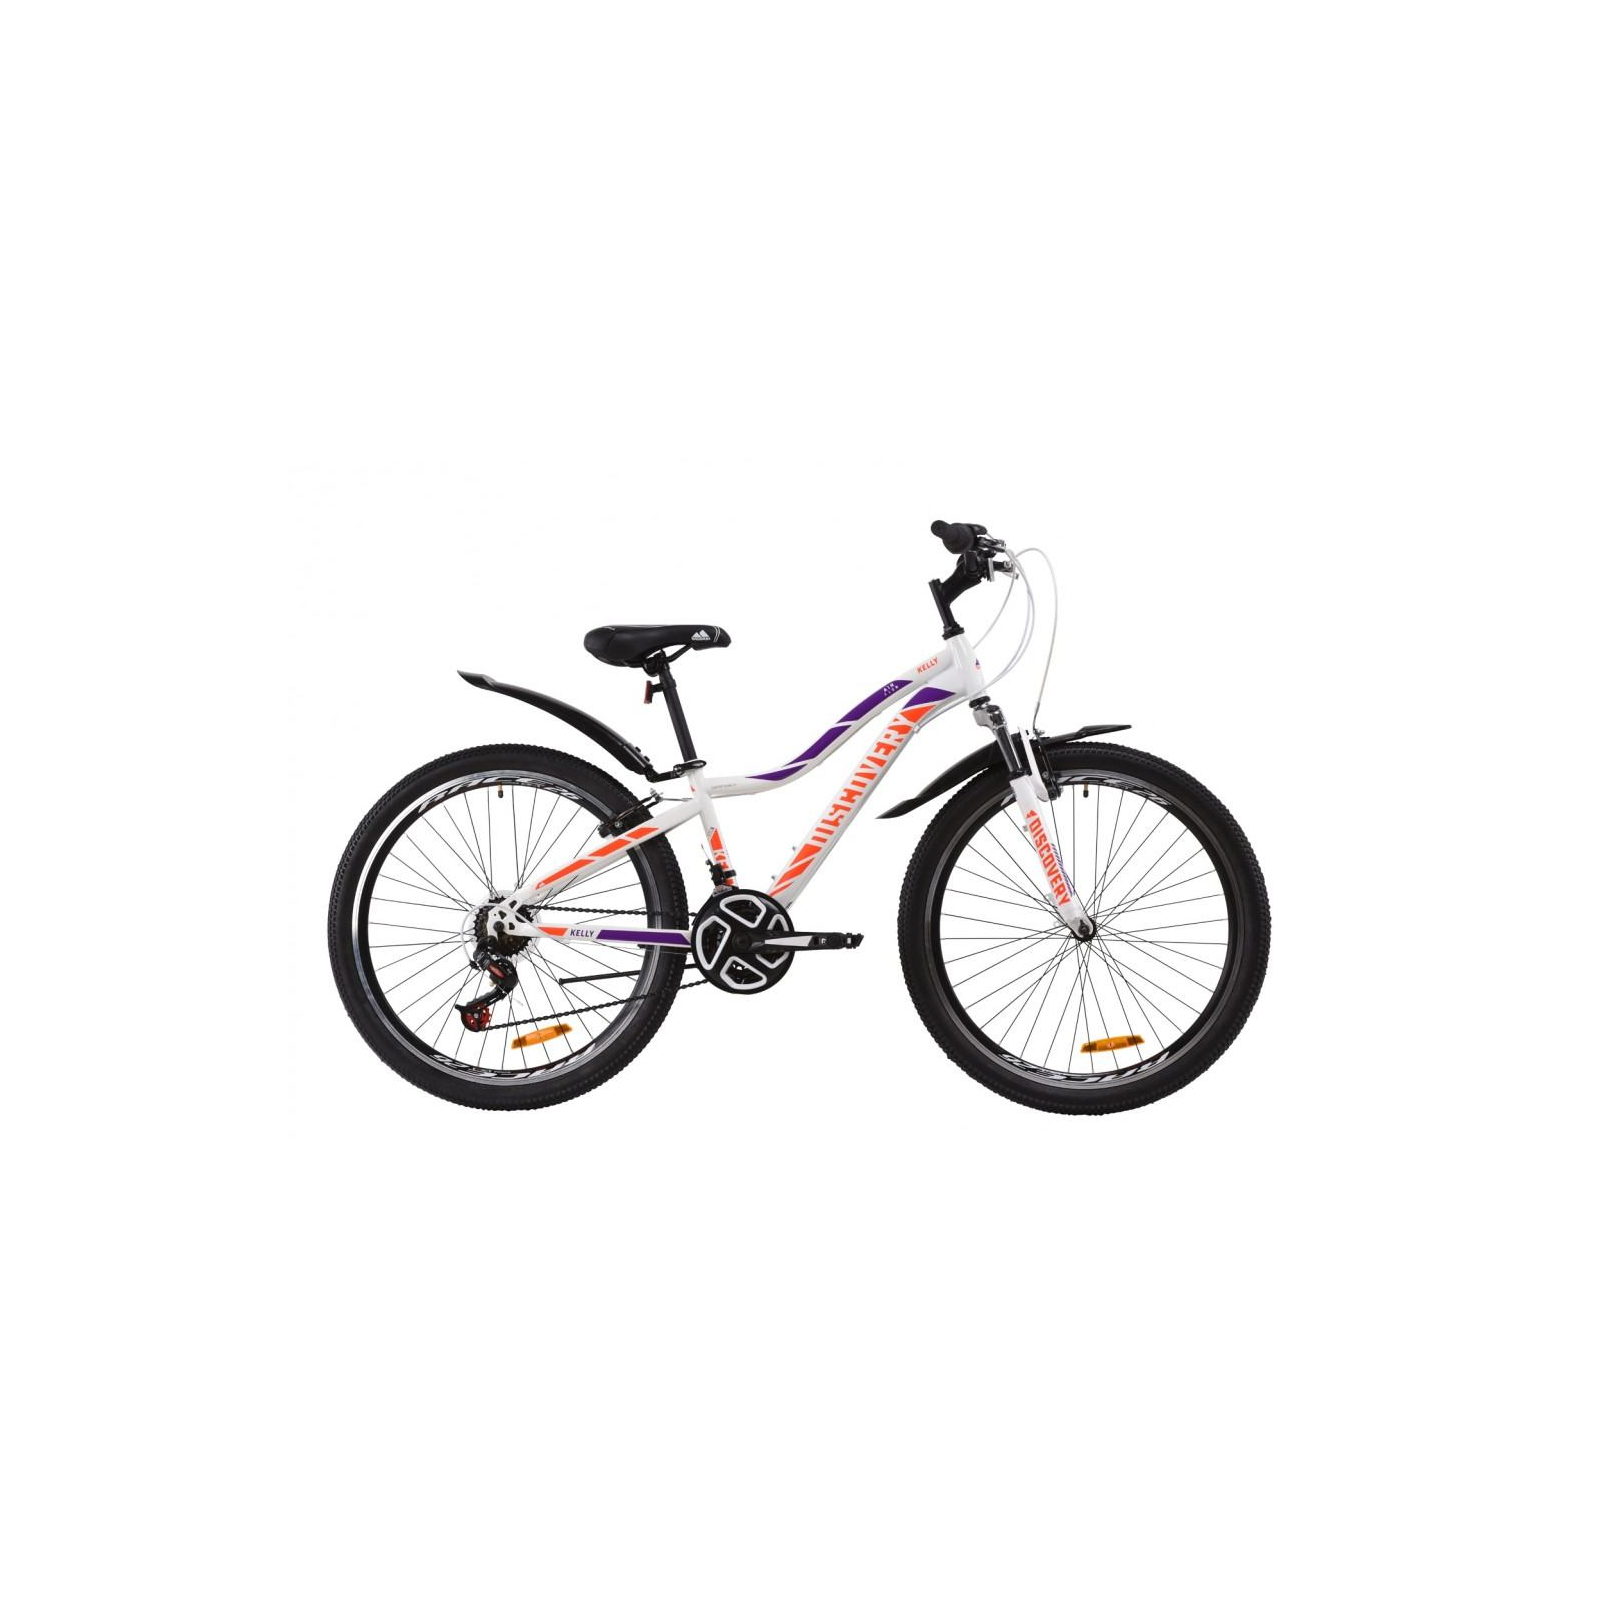 Велосипед Discovery 26" KELLY AM Vbr рама-16" St 2020 бело-фиолетовый с оранжевы (OPS-DIS-26-255)